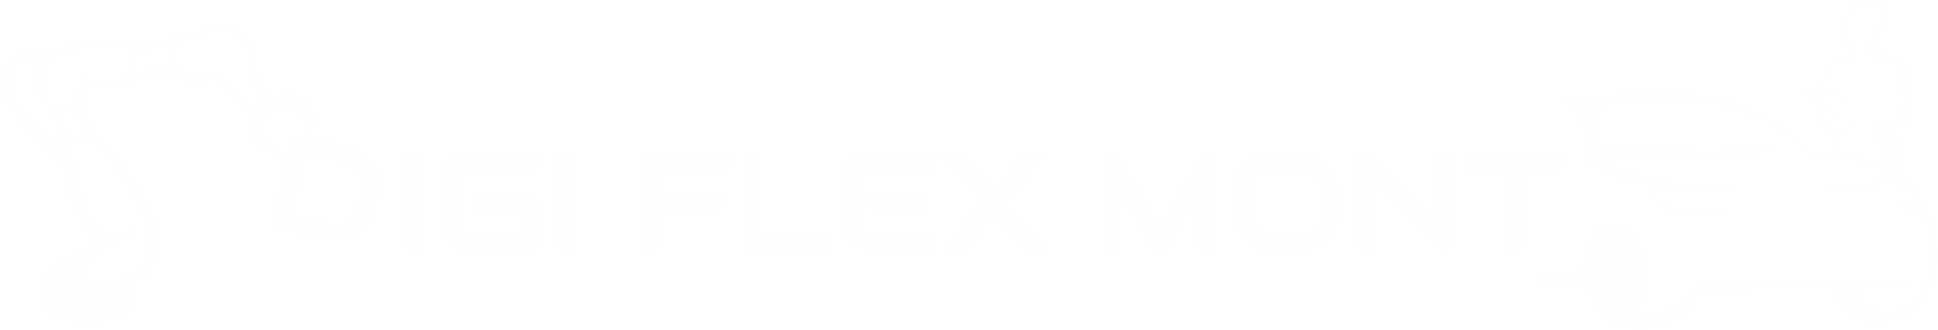 DigiFlexMont